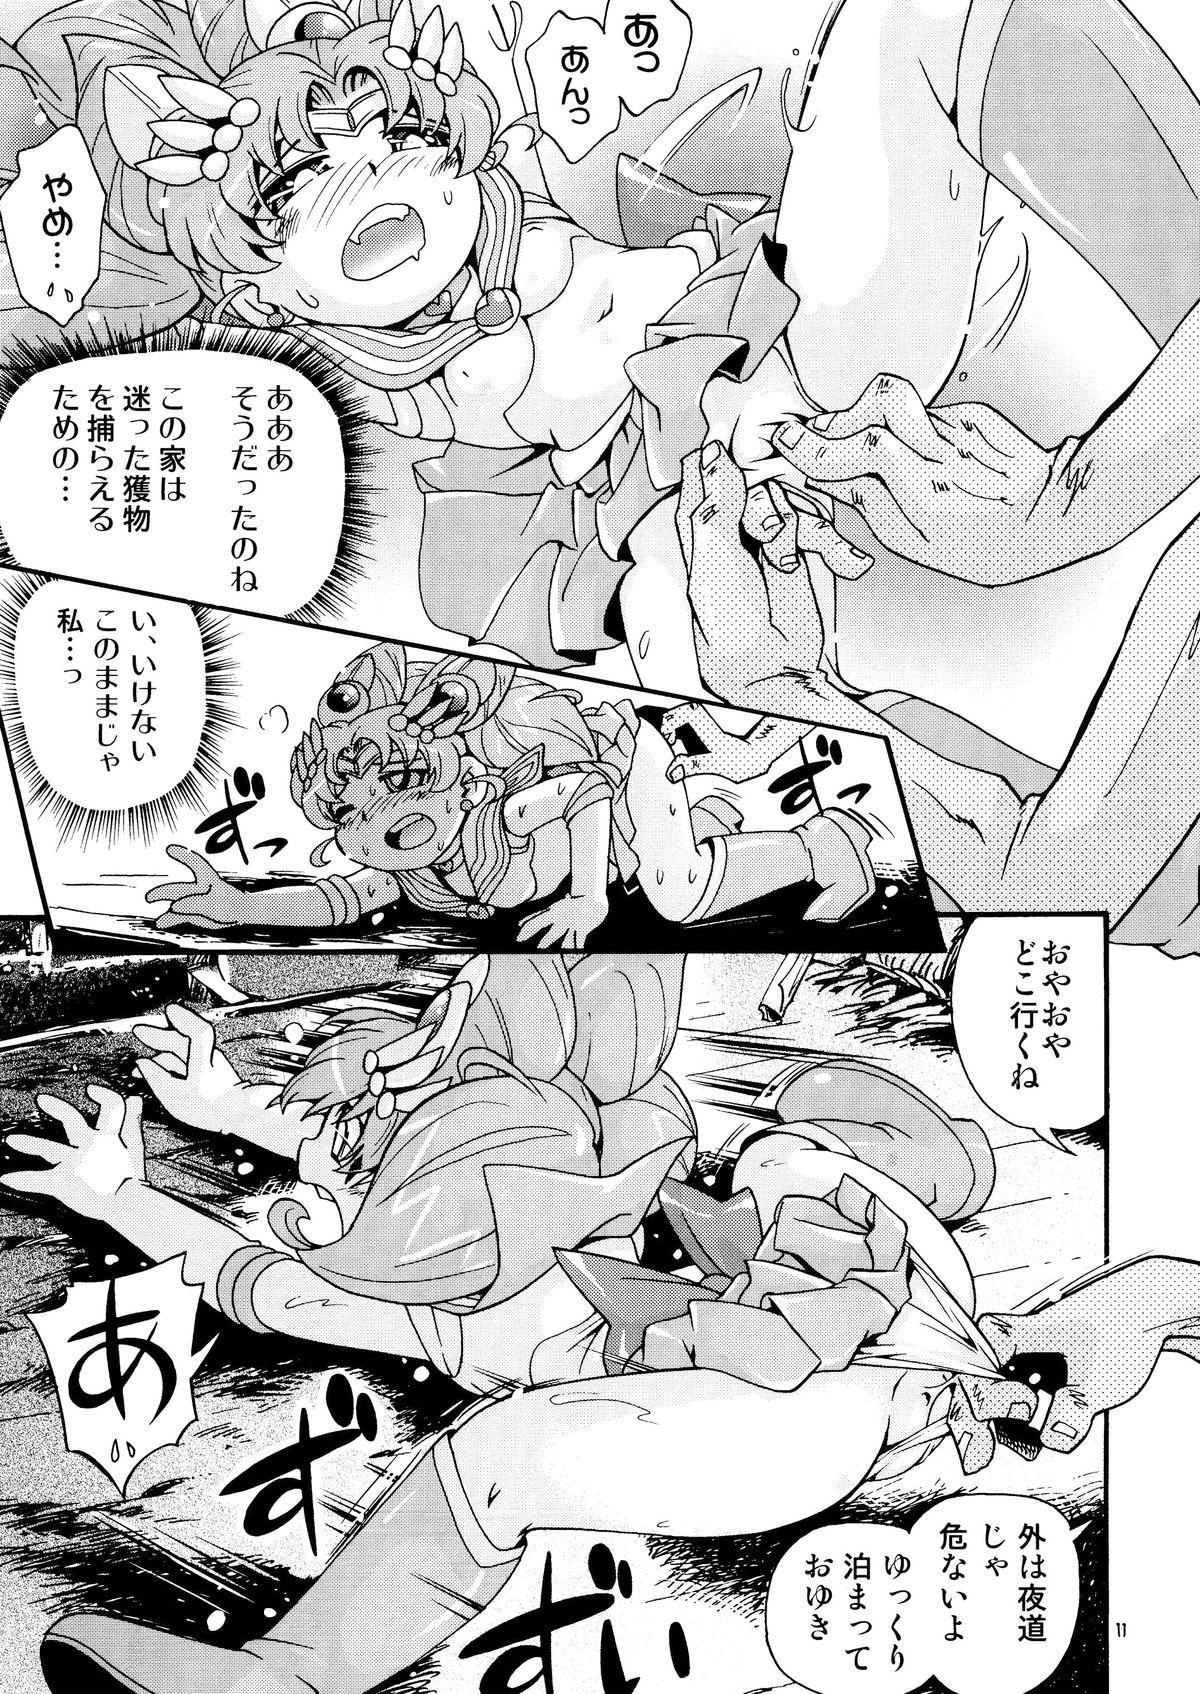 Buttplug Chiccha na Bishoujo Senshi 4 - Sailor moon Pervert - Page 11